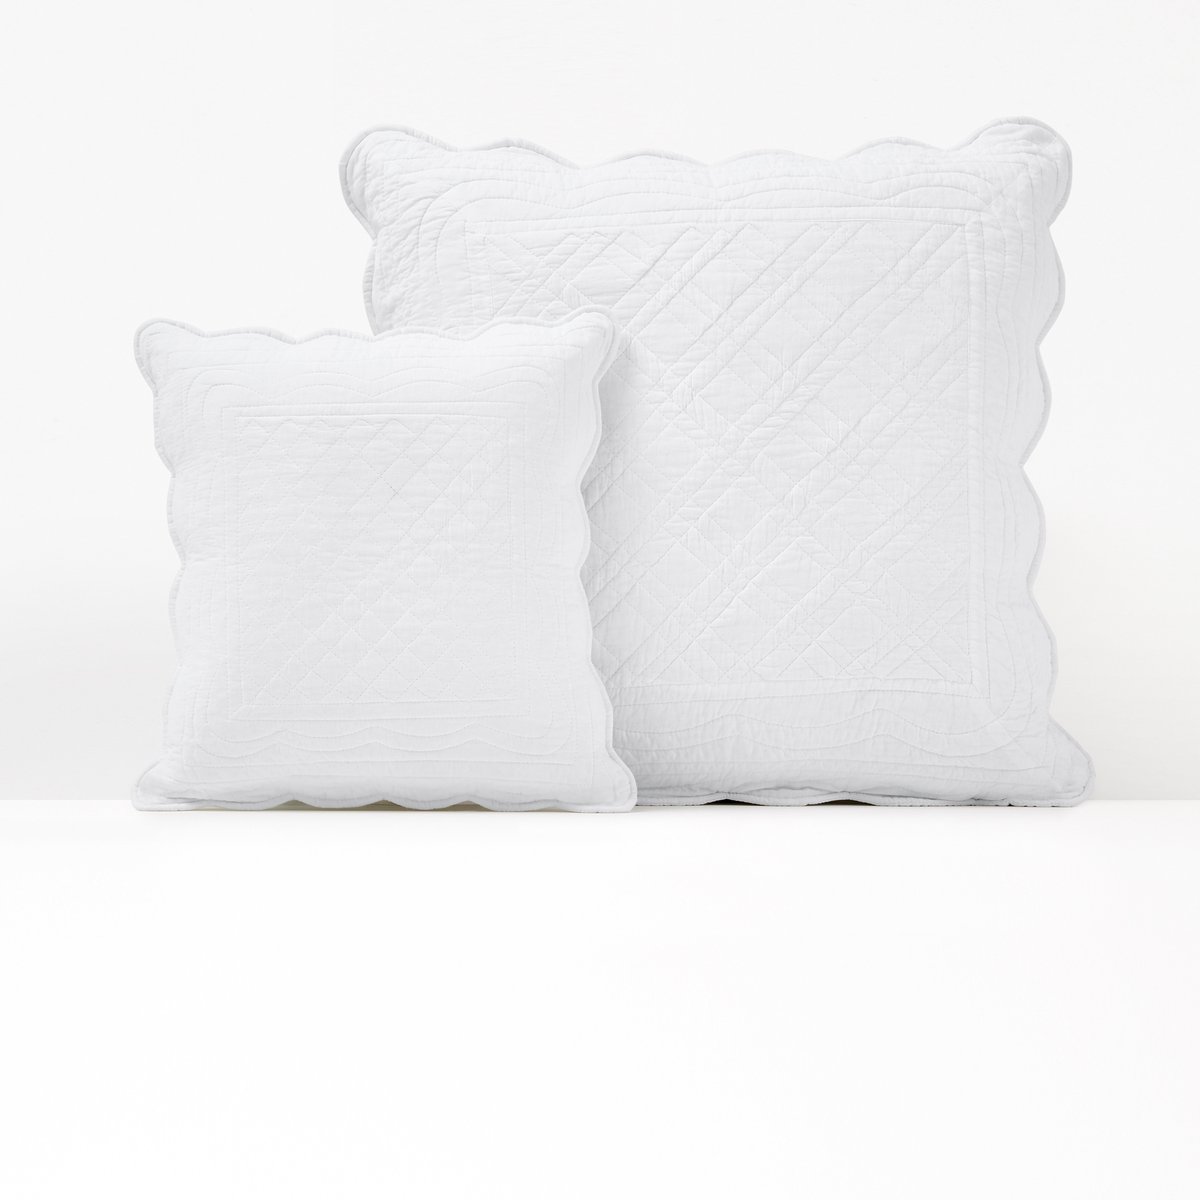 Чехол LaRedoute На подушку или подушку-валик из хлопка SCENARIO 65 x 65 см белый, размер 65 x 65 см - фото 1